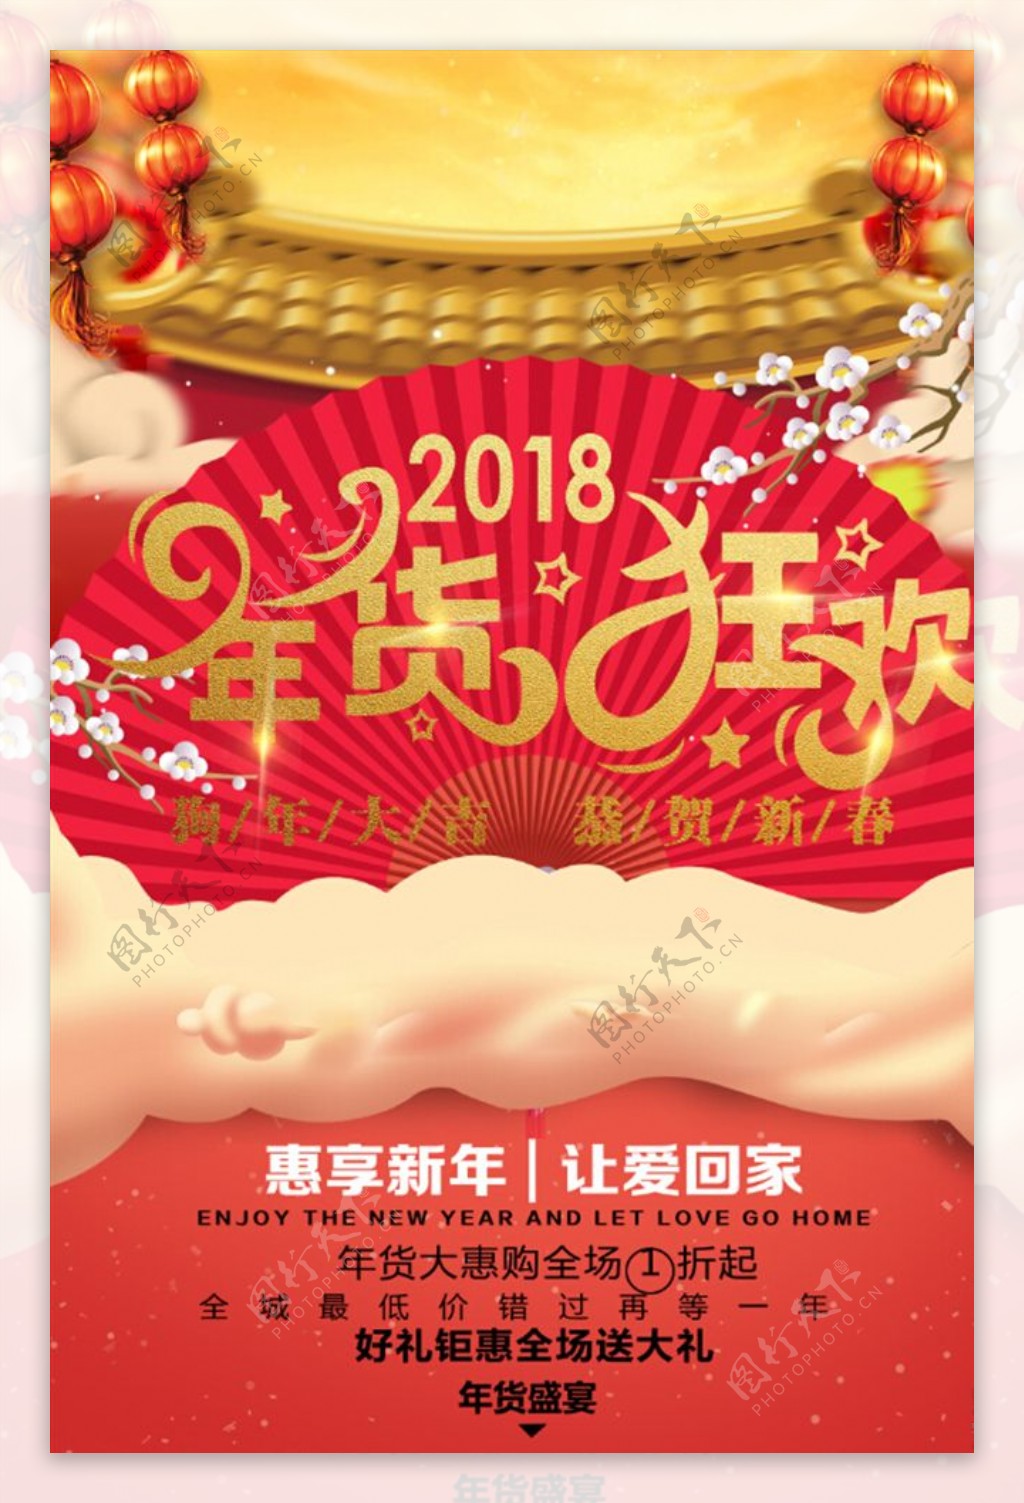 中国风2018年货狂欢促销海报